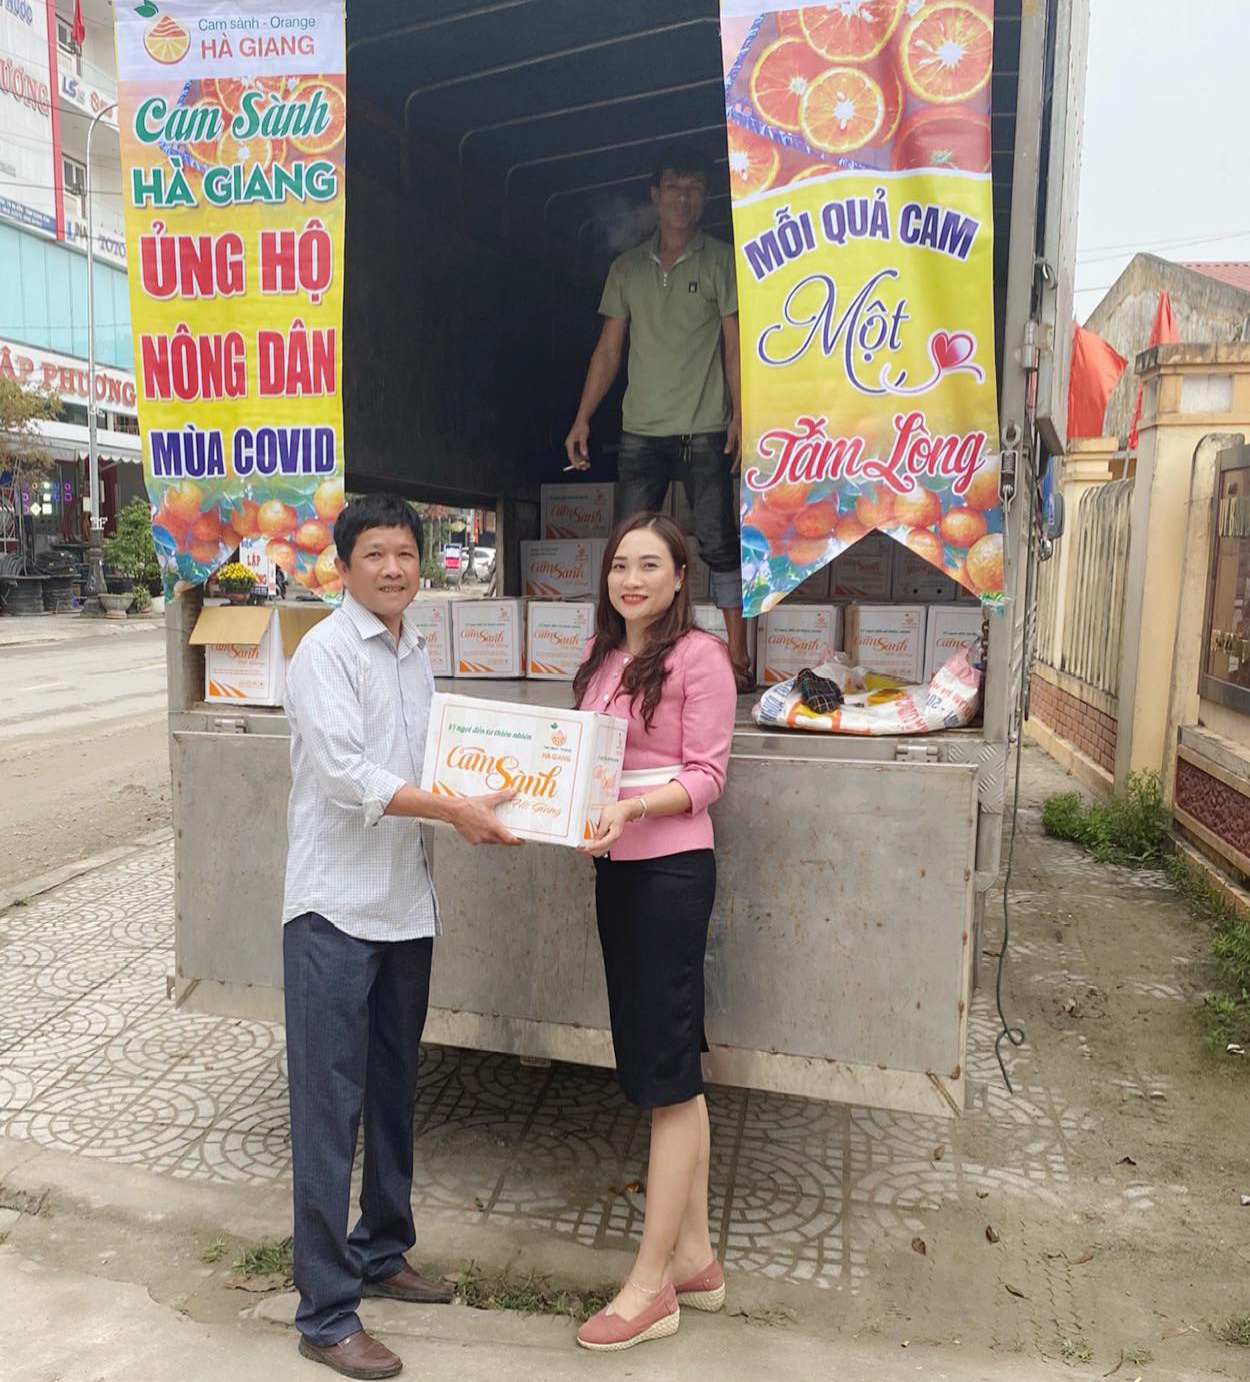 Quảng Bình: Bán hết veo hơn 20 tấn cam sành cho nông dân Hà Giang  - Ảnh 2.